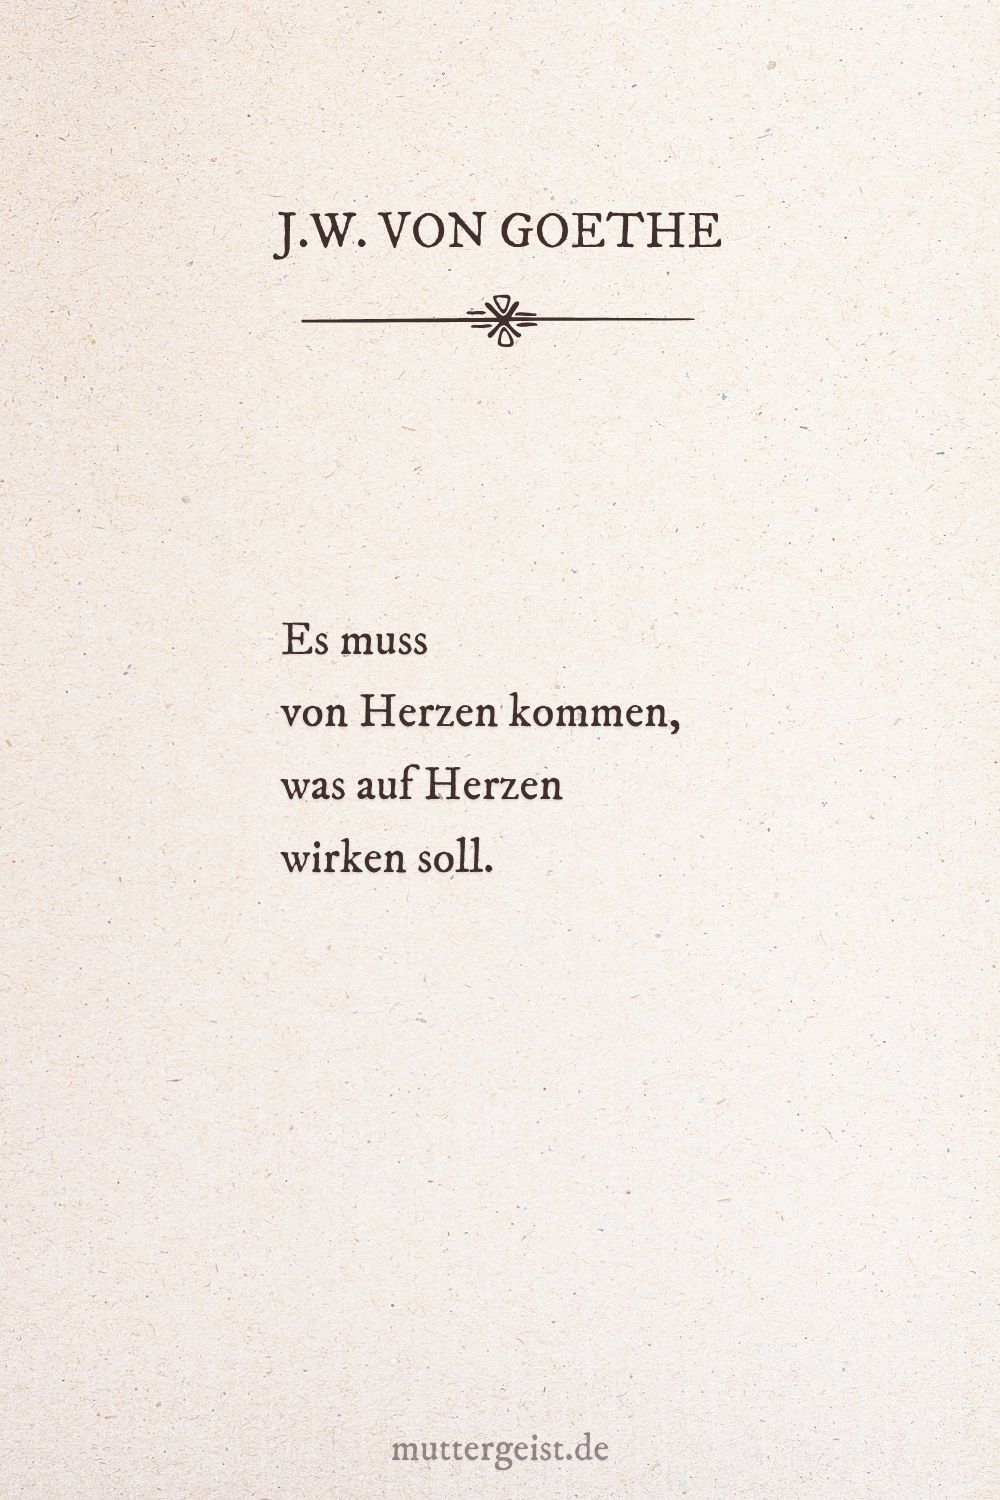 Johann Wolfgang von Goethes Zitat über die Liebe